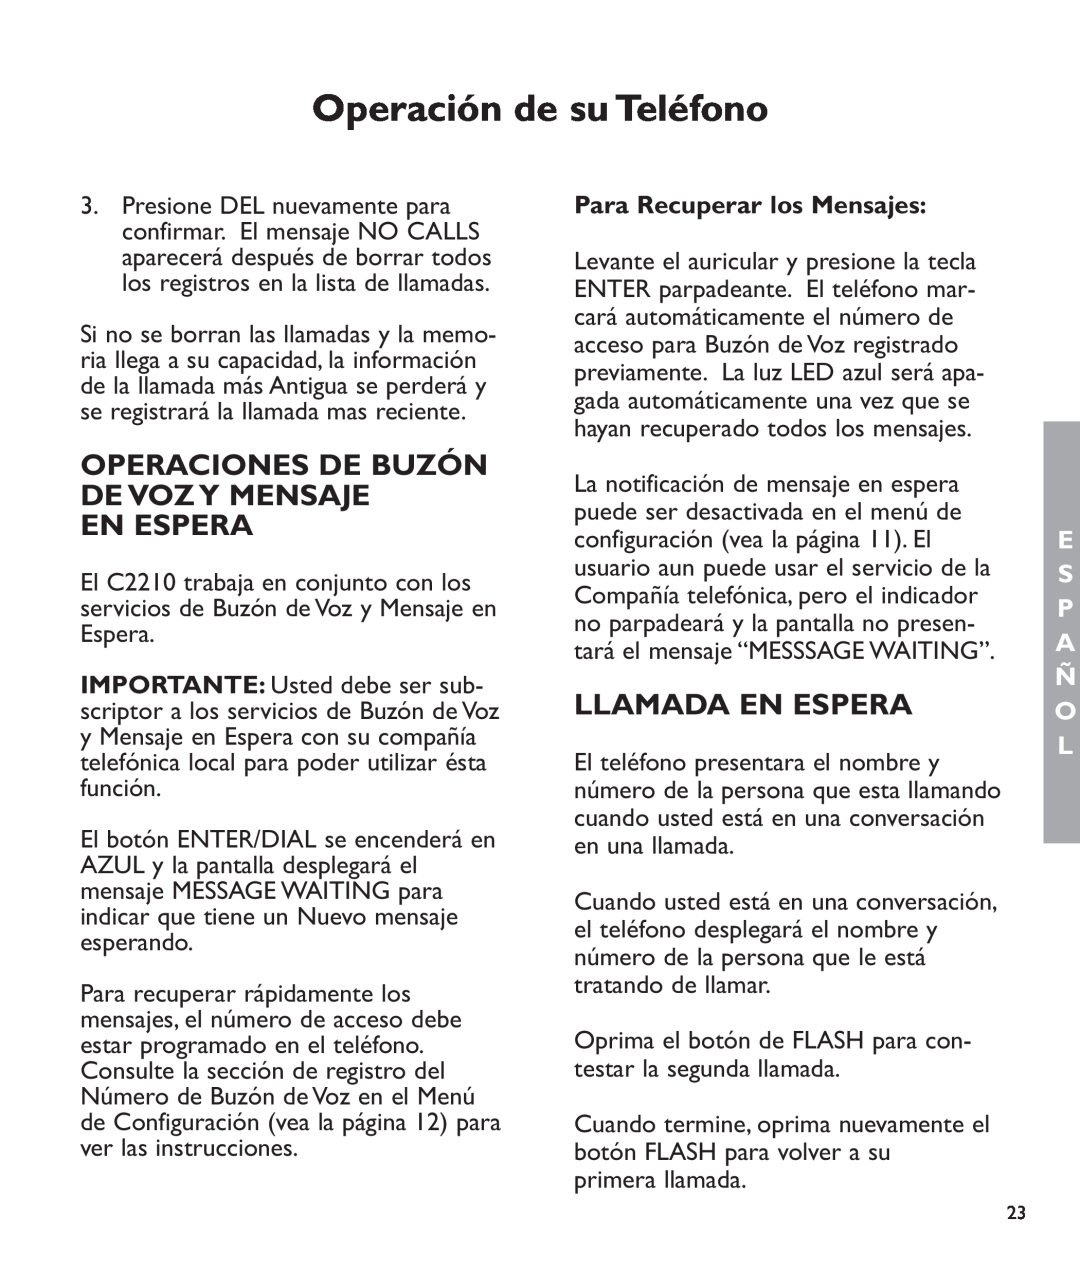 Clarity c2210 manual Operaciones De Buzón De Voz Y Mensaje En Espera, Llamada En Espera, Para Recuperar los Mensajes 